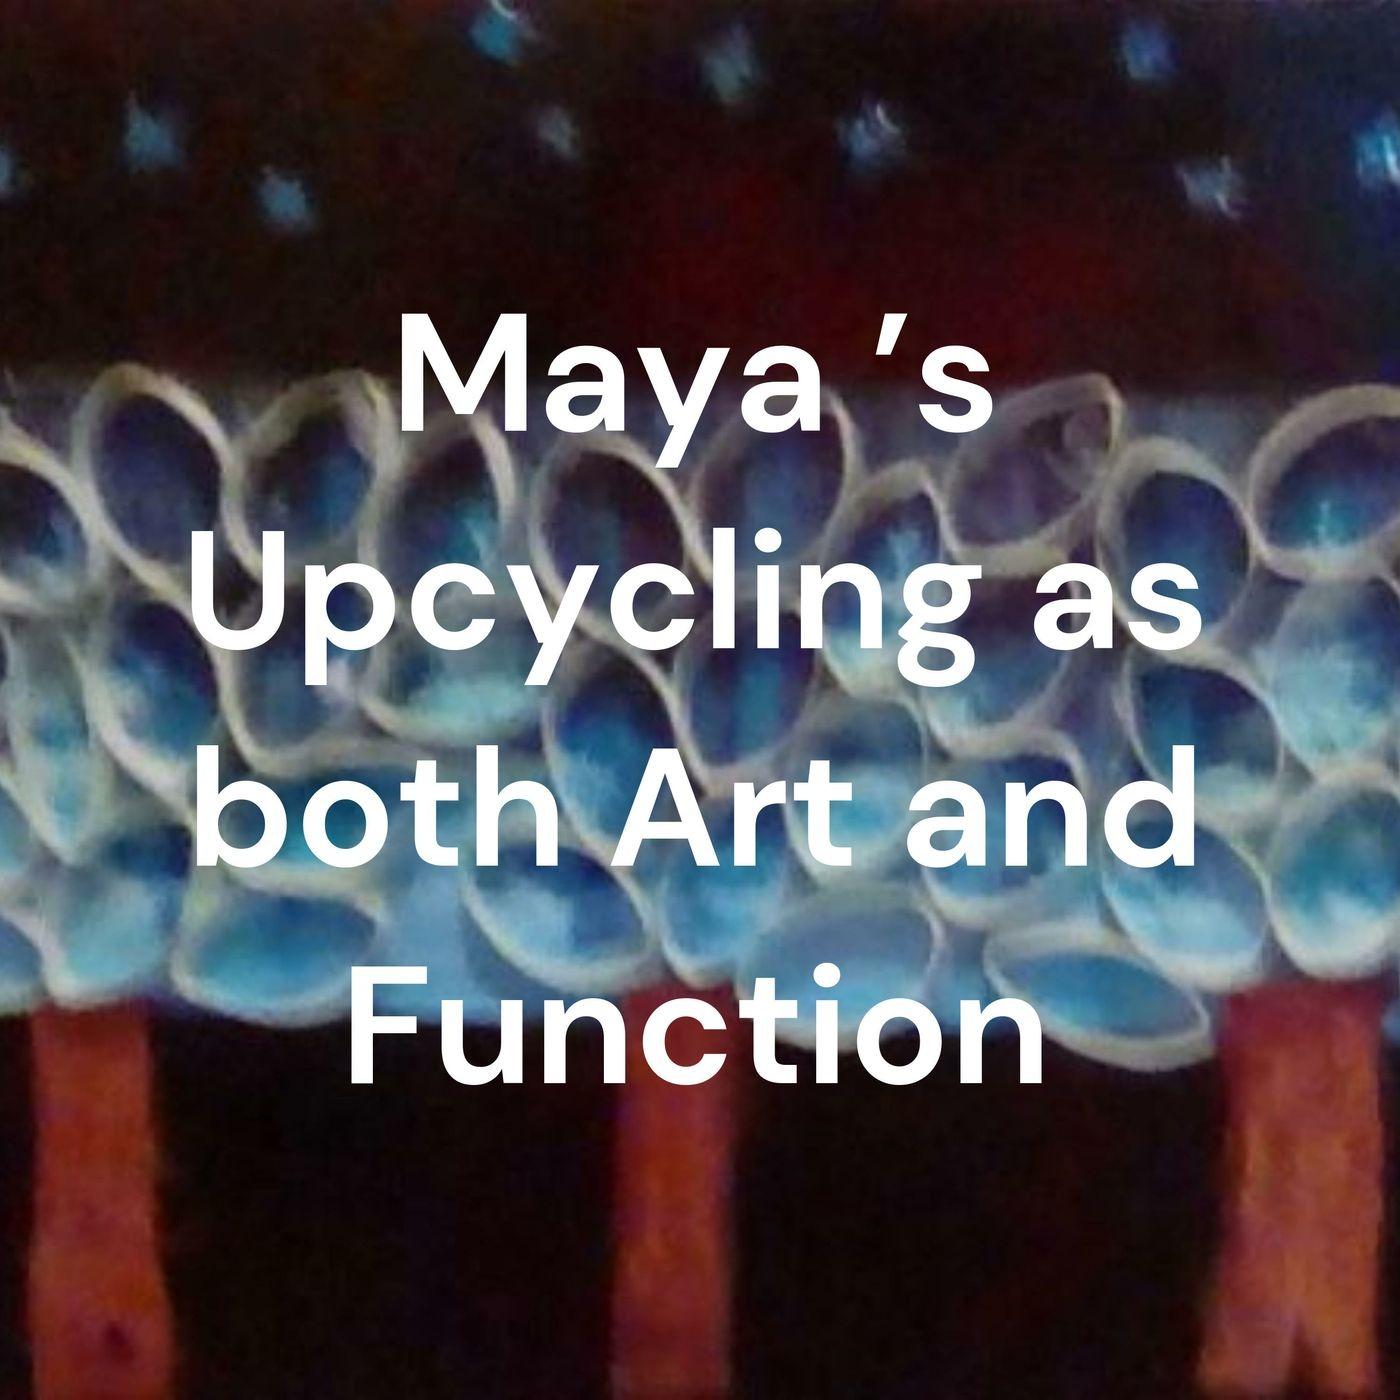 Maya 's Upcycling as both Art and Function